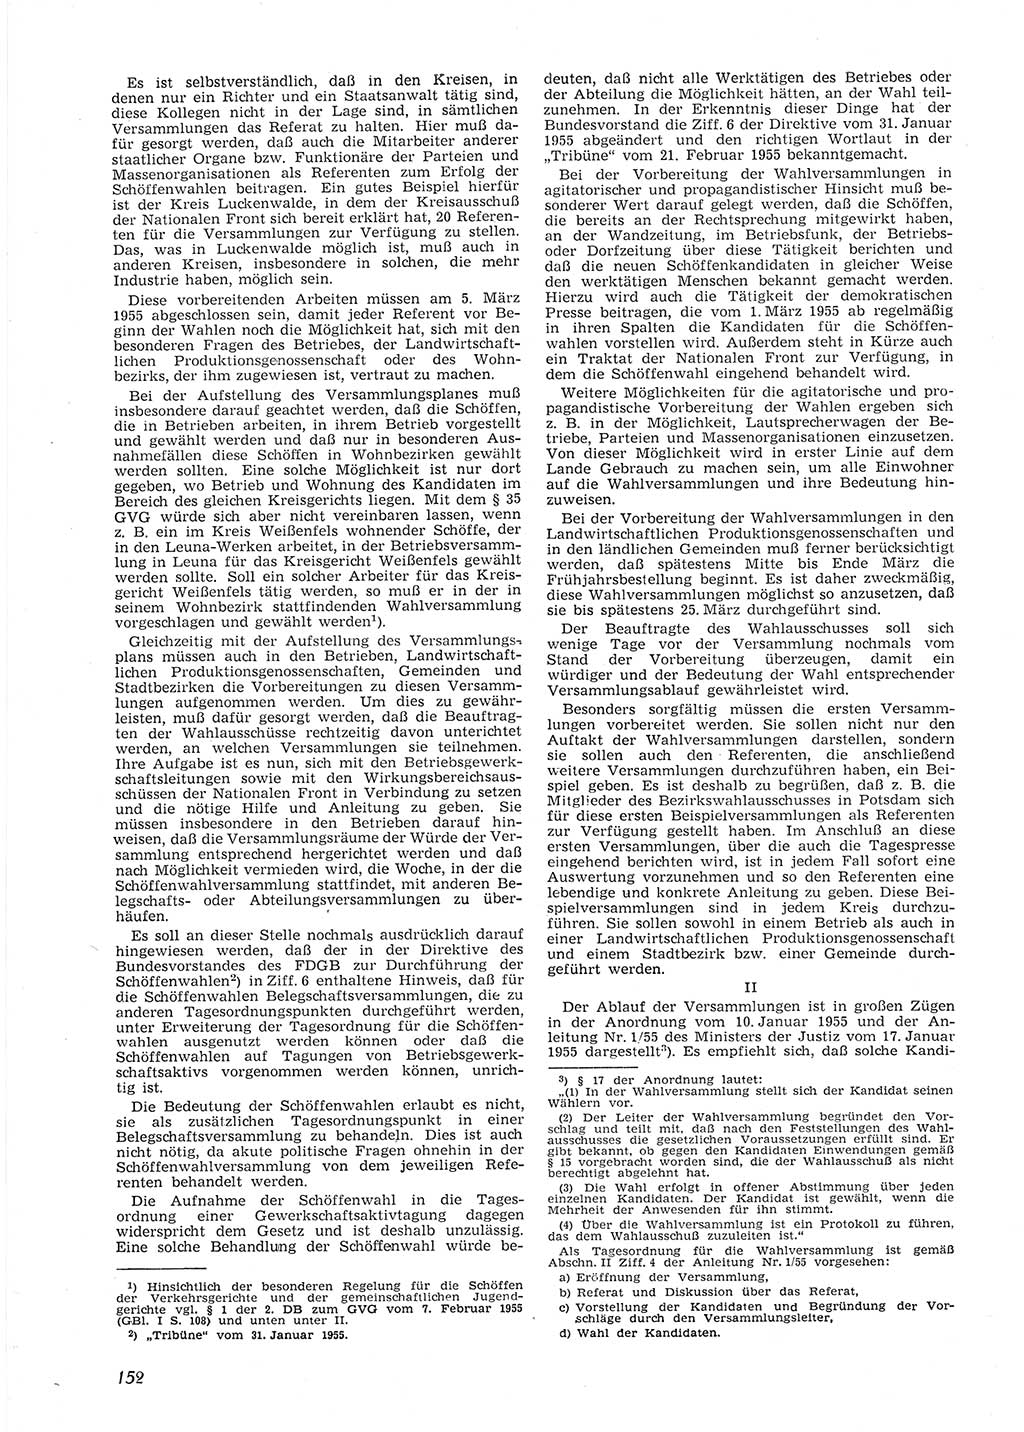 Neue Justiz (NJ), Zeitschrift für Recht und Rechtswissenschaft [Deutsche Demokratische Republik (DDR)], 9. Jahrgang 1955, Seite 152 (NJ DDR 1955, S. 152)